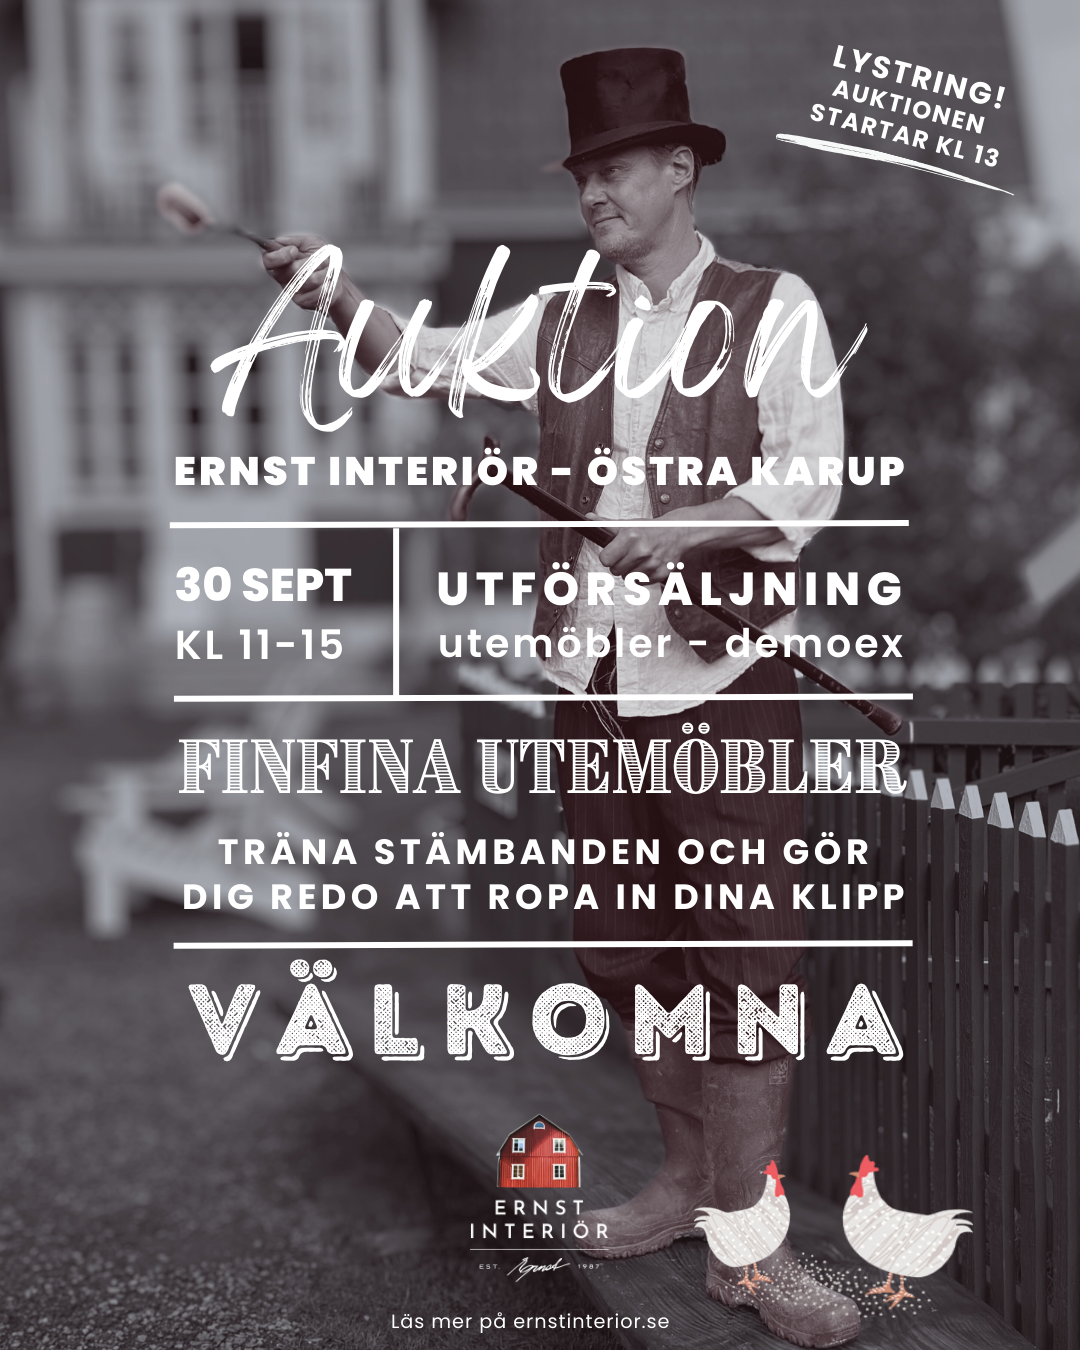 Auktion på Ernst Interiör i Östra Karup